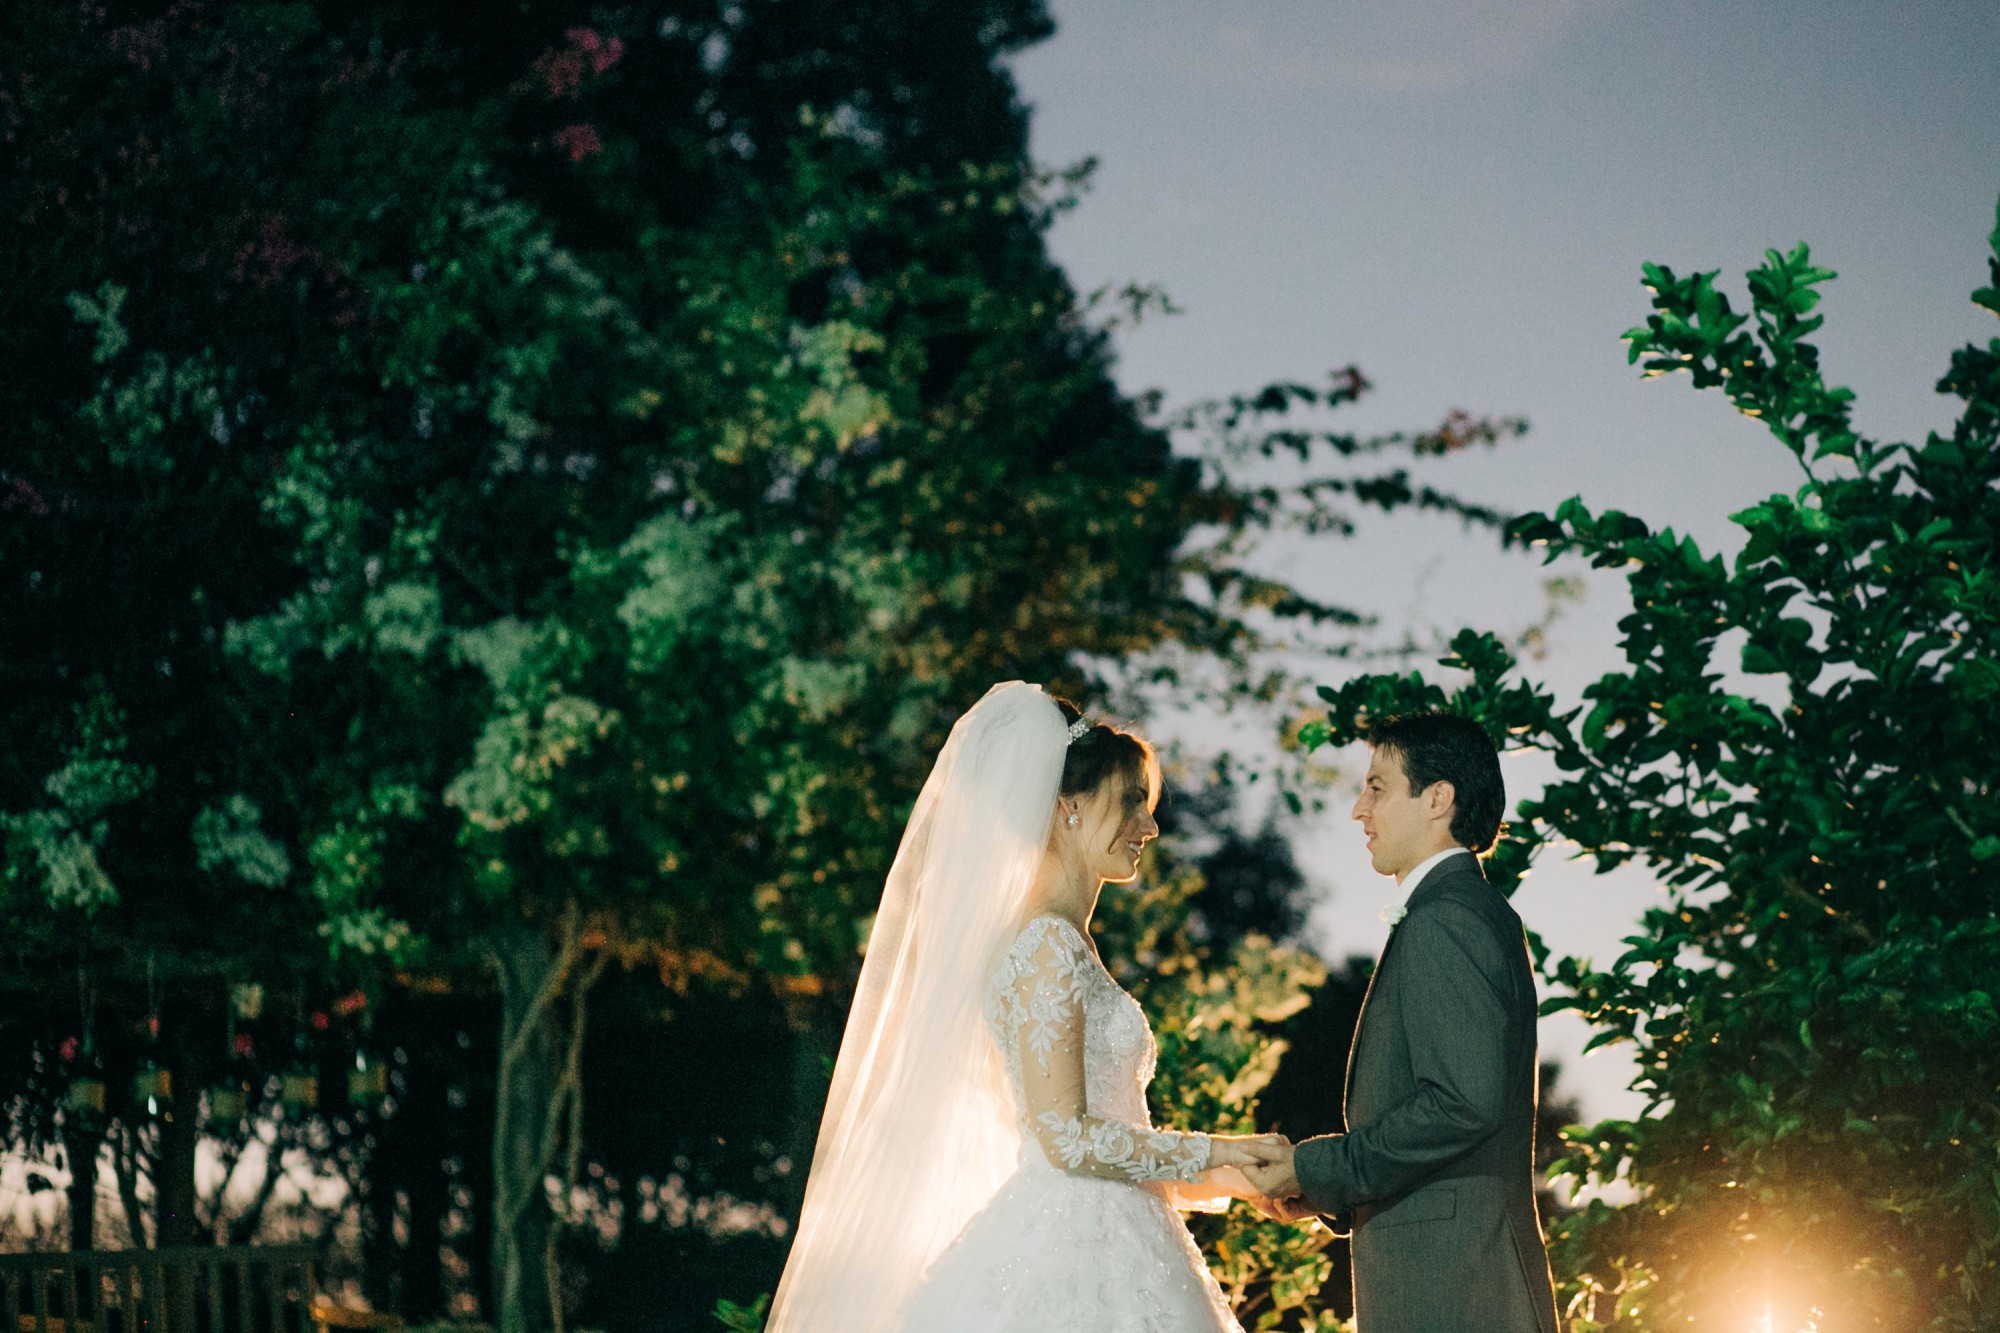 Casamento Anderson e Juliana Fioreli em Iporã Paraná - por Lorran Souza e Léia Sotile - Fotografos de casamentos - JA-2070